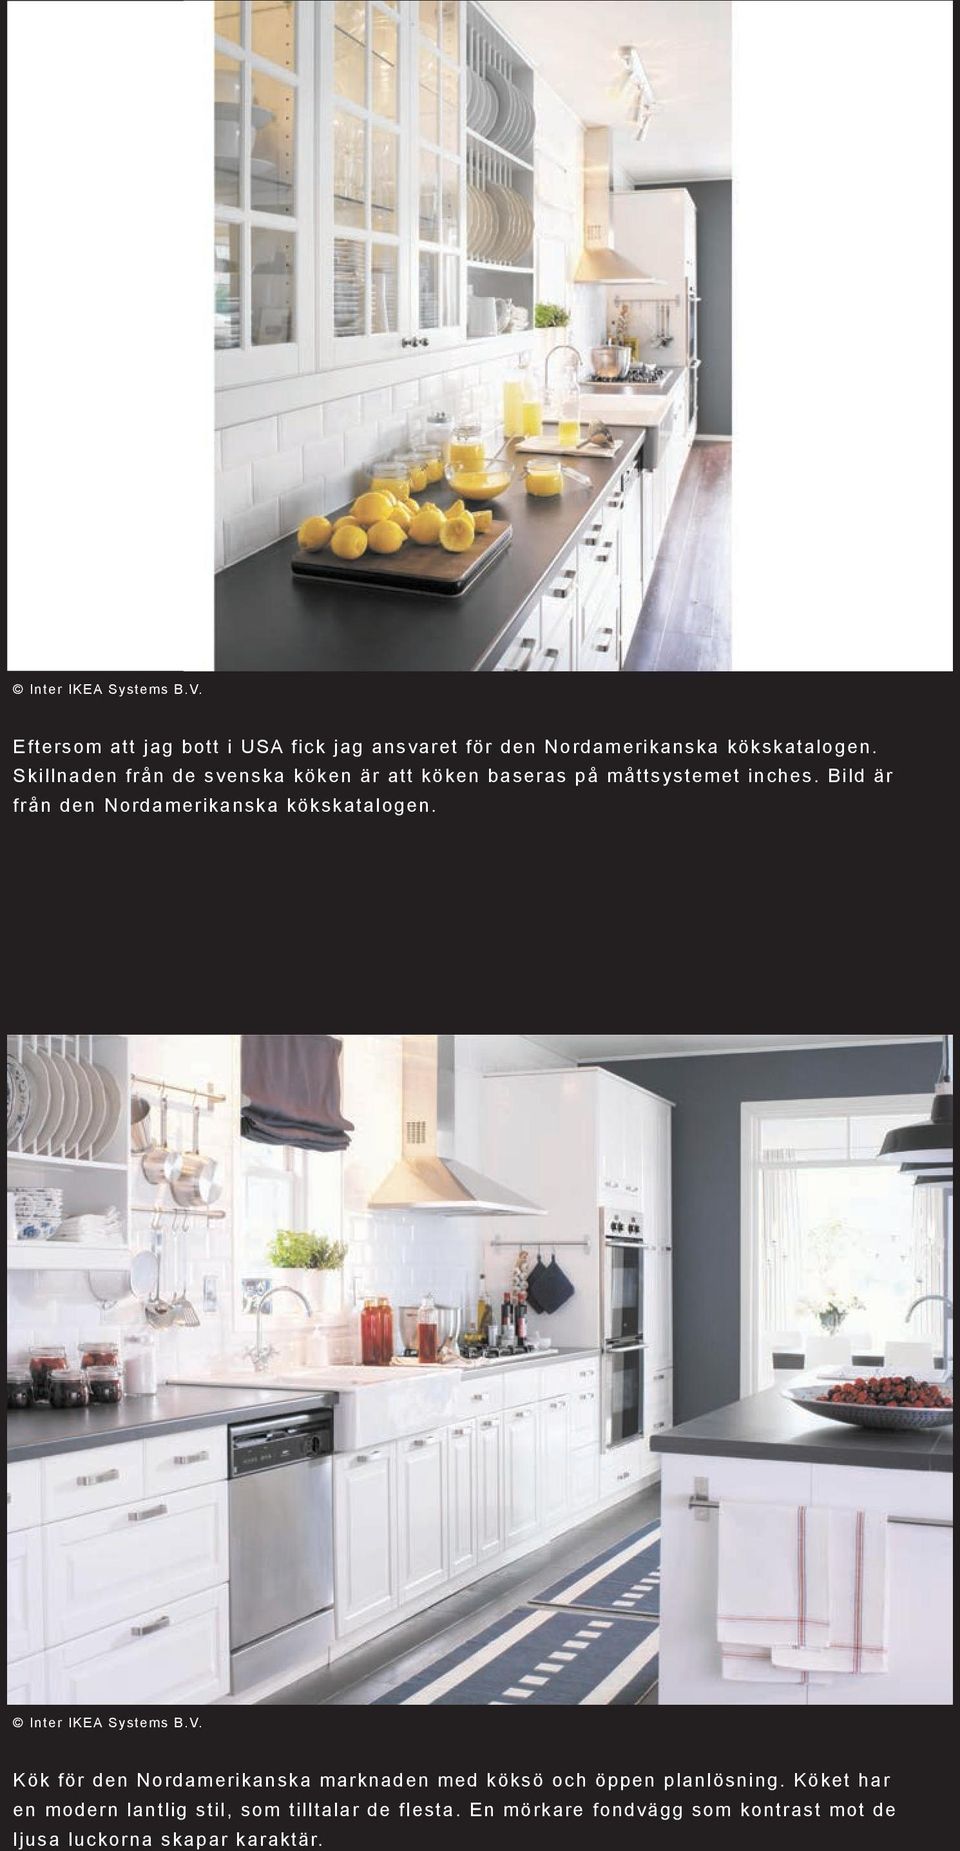 Bild är från den Nordamerikanska kökskatalogen. Inter IKEA Systems B.V.